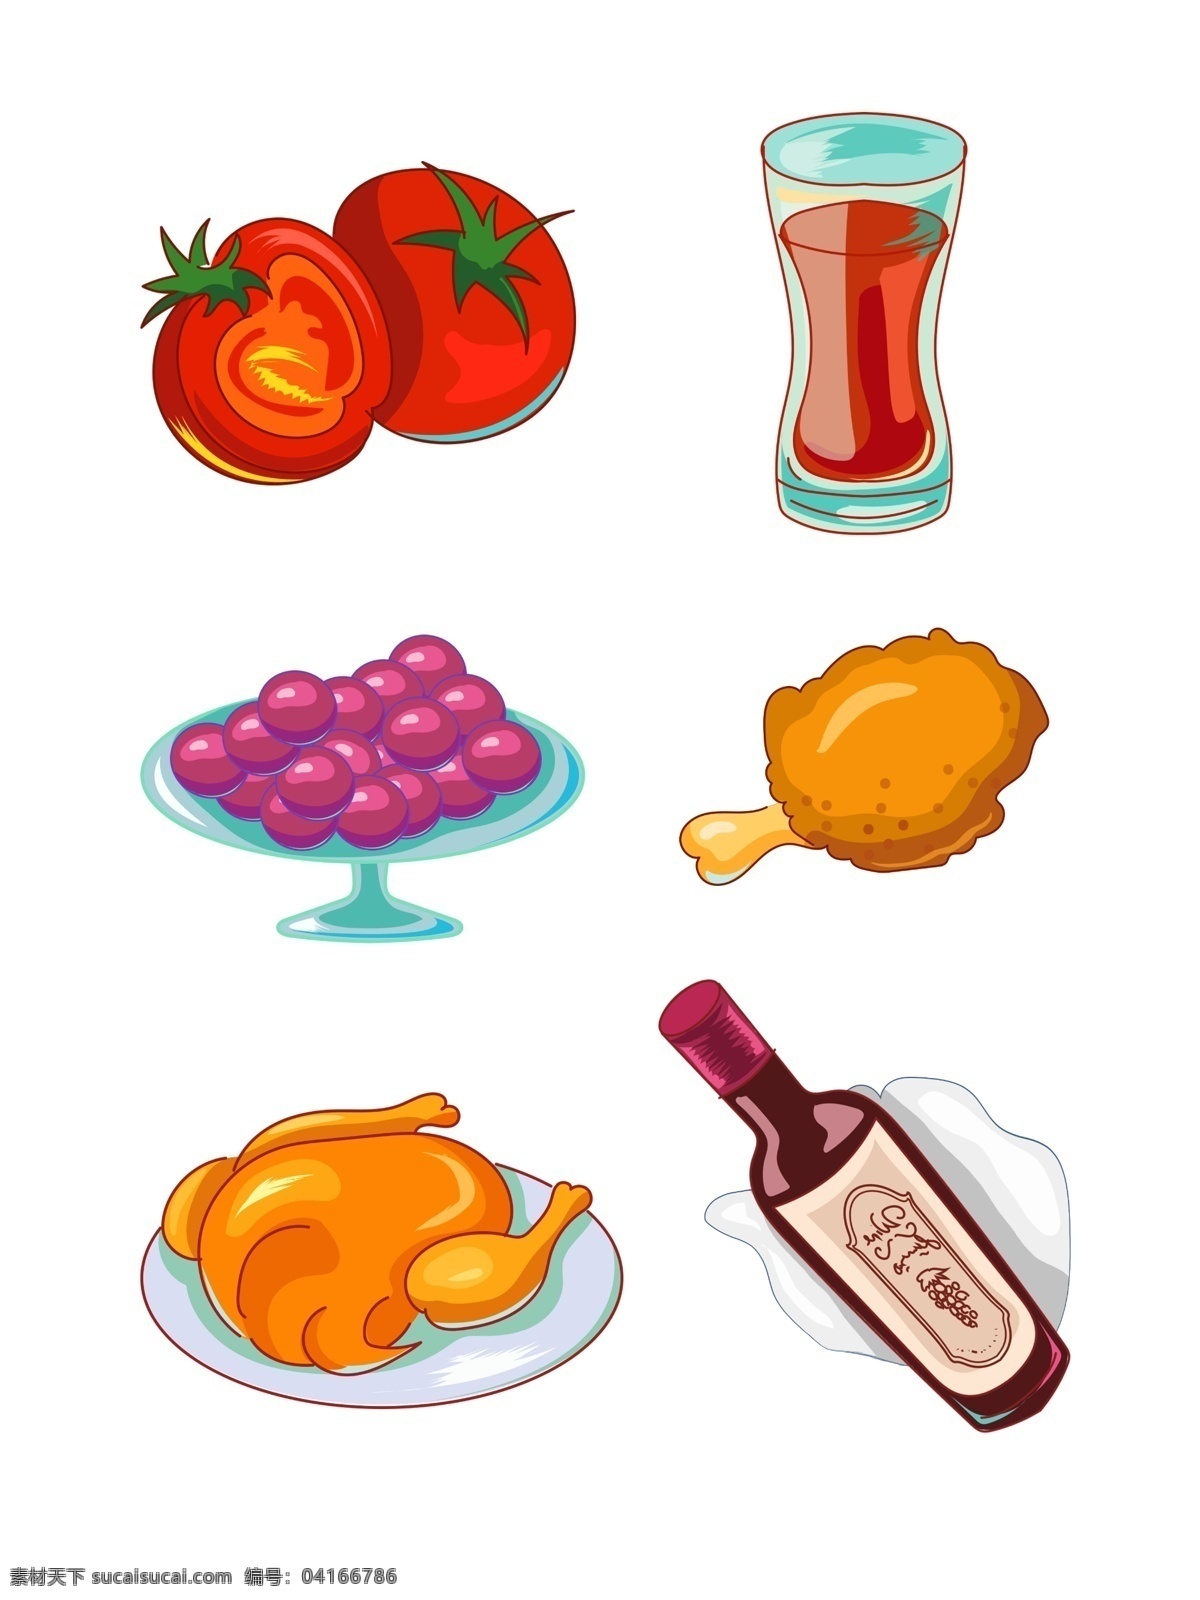 感恩节 手绘 卡通 食物 西餐 合集 西红柿 可乐 葡萄 炸鸡 火鸡 红酒 快餐 食品 图标 装饰图案